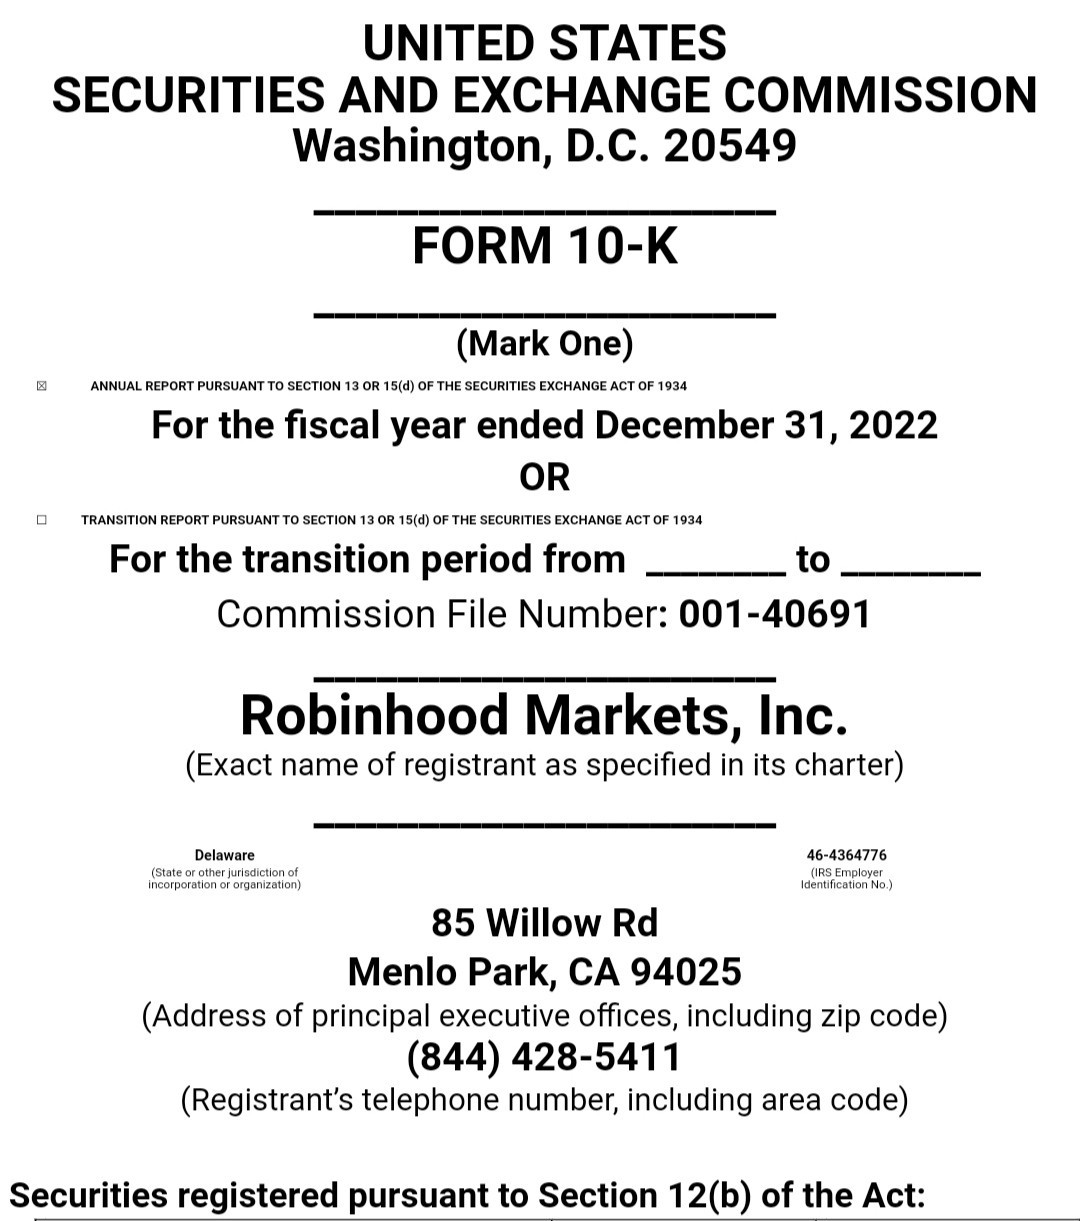 مقدمة مذكرة استدعاء لجنة الأوراق المالية والبورصات الأمريكية لمنصة روبن هود.